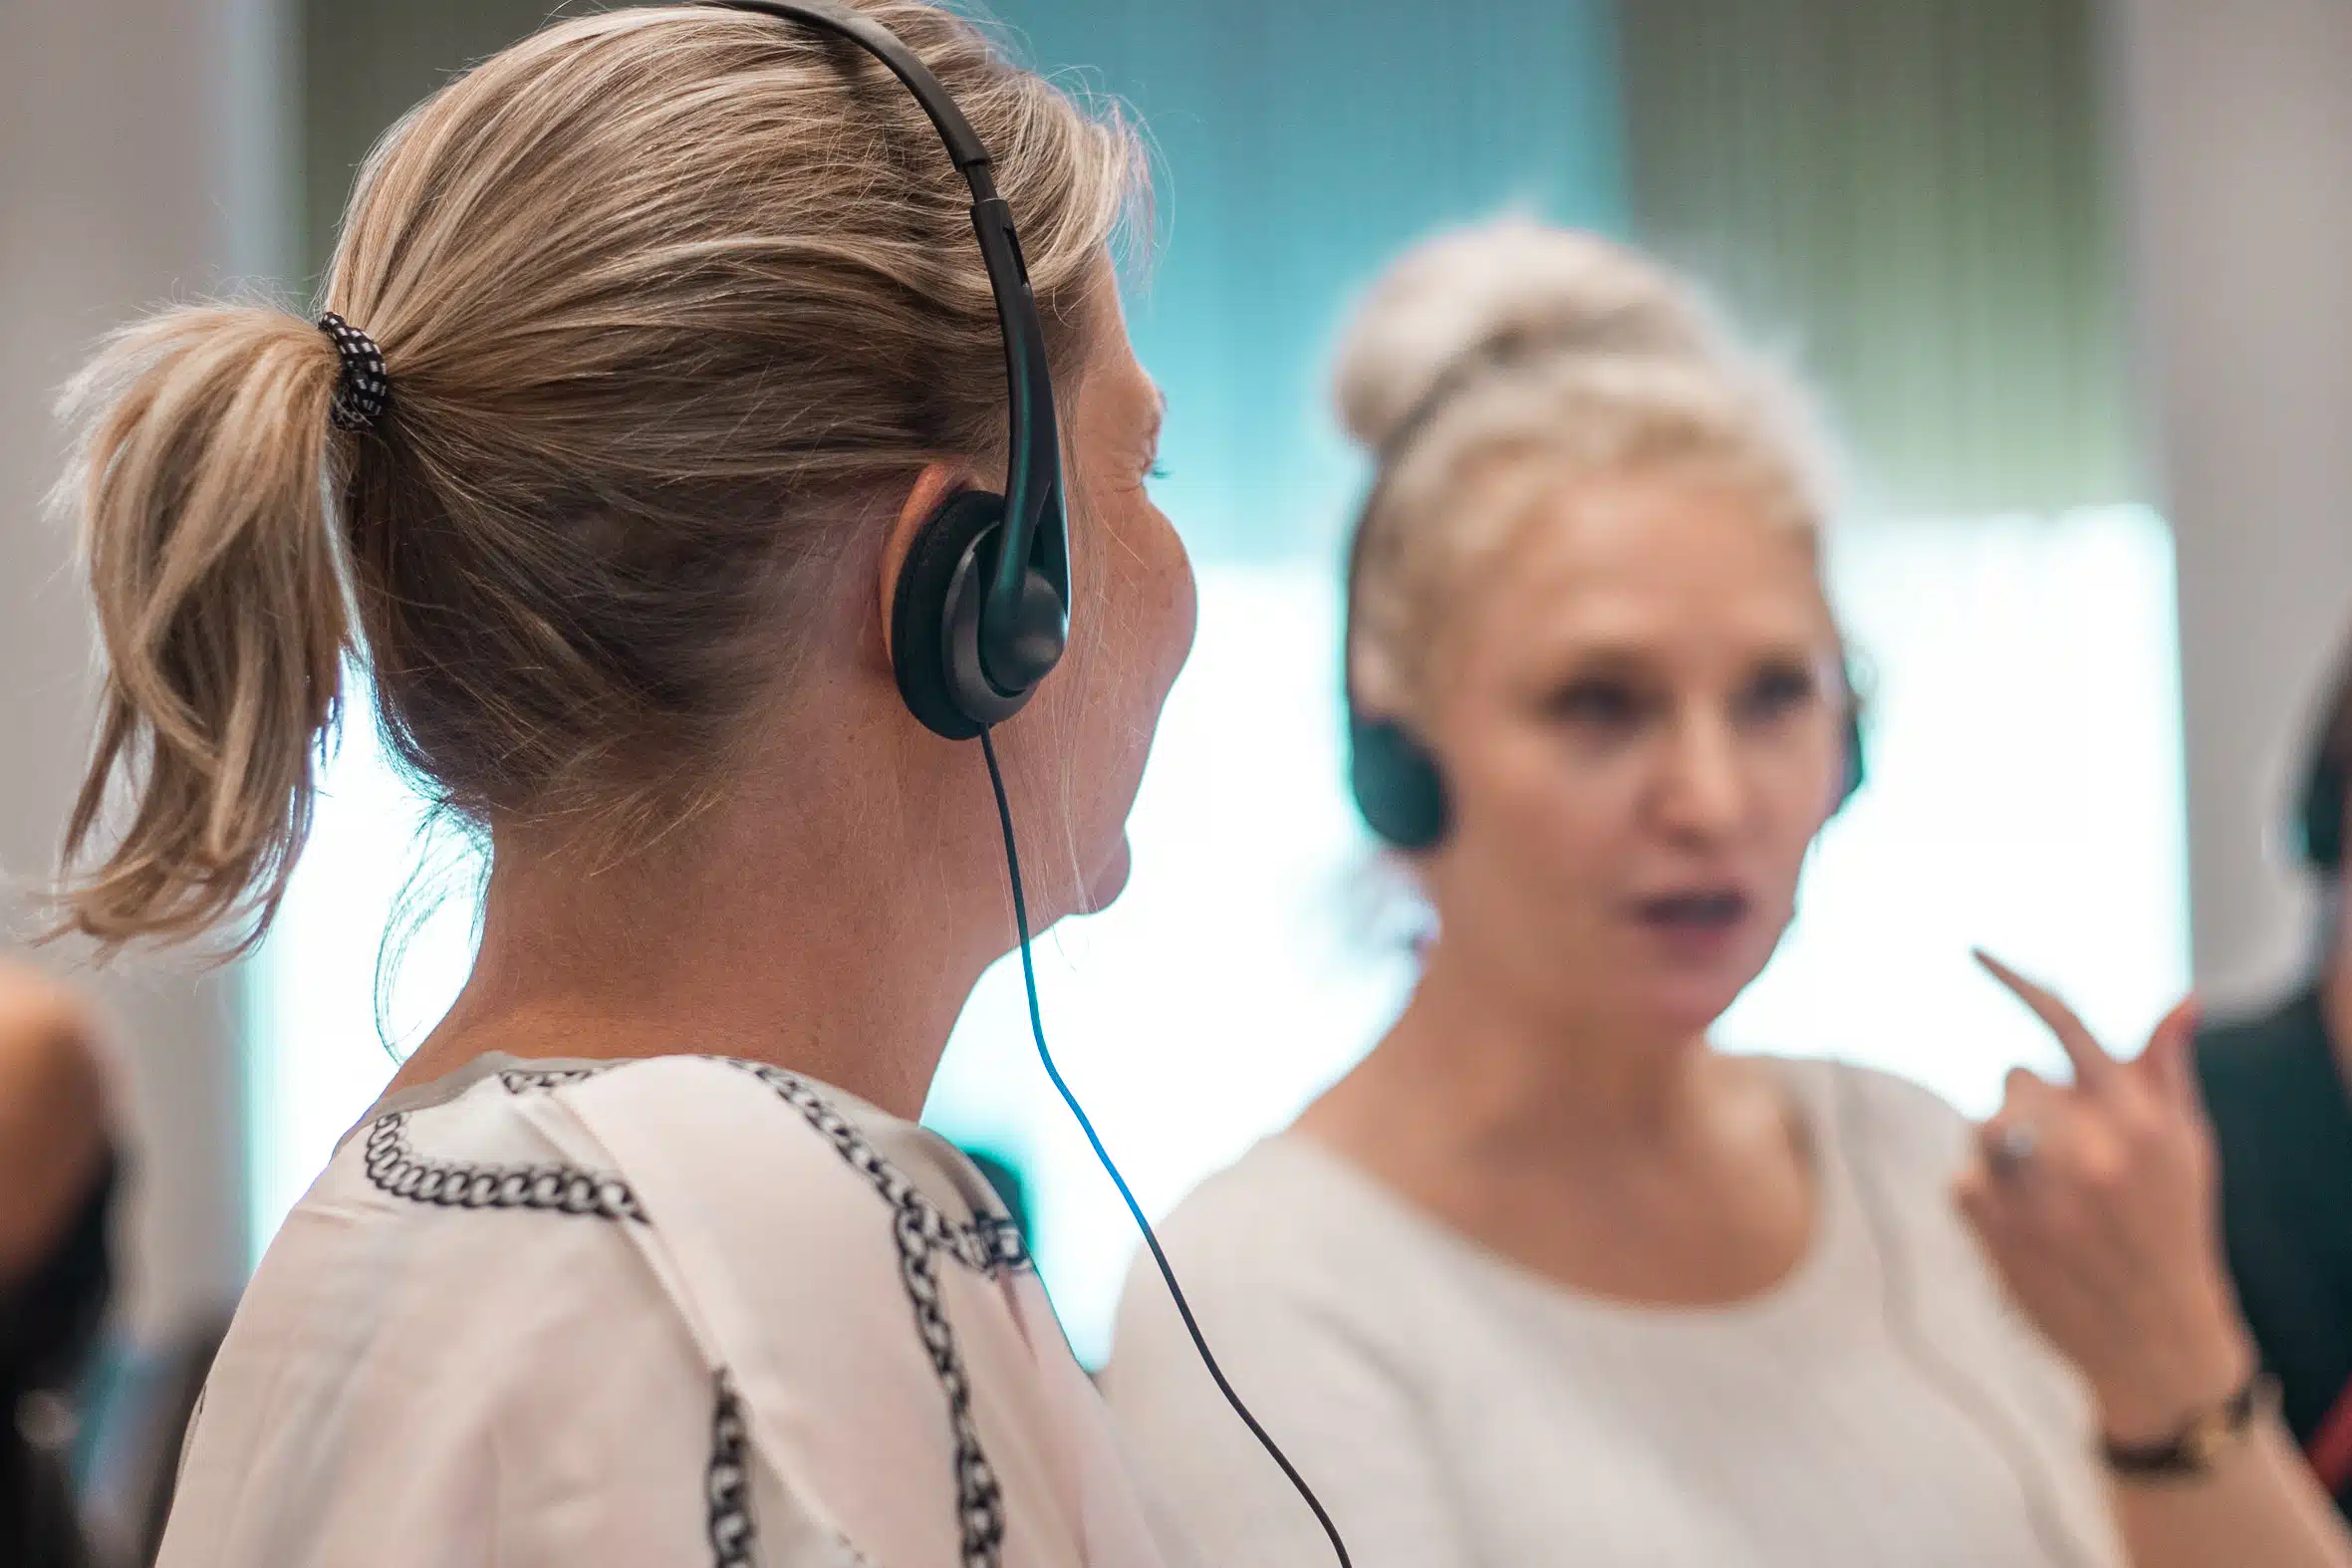 Två kvinnor sitter i sal med hörlurar under en hörselövning. Båda har vita tröjor och ljusblont hår och tittar mot varandra engagerat.